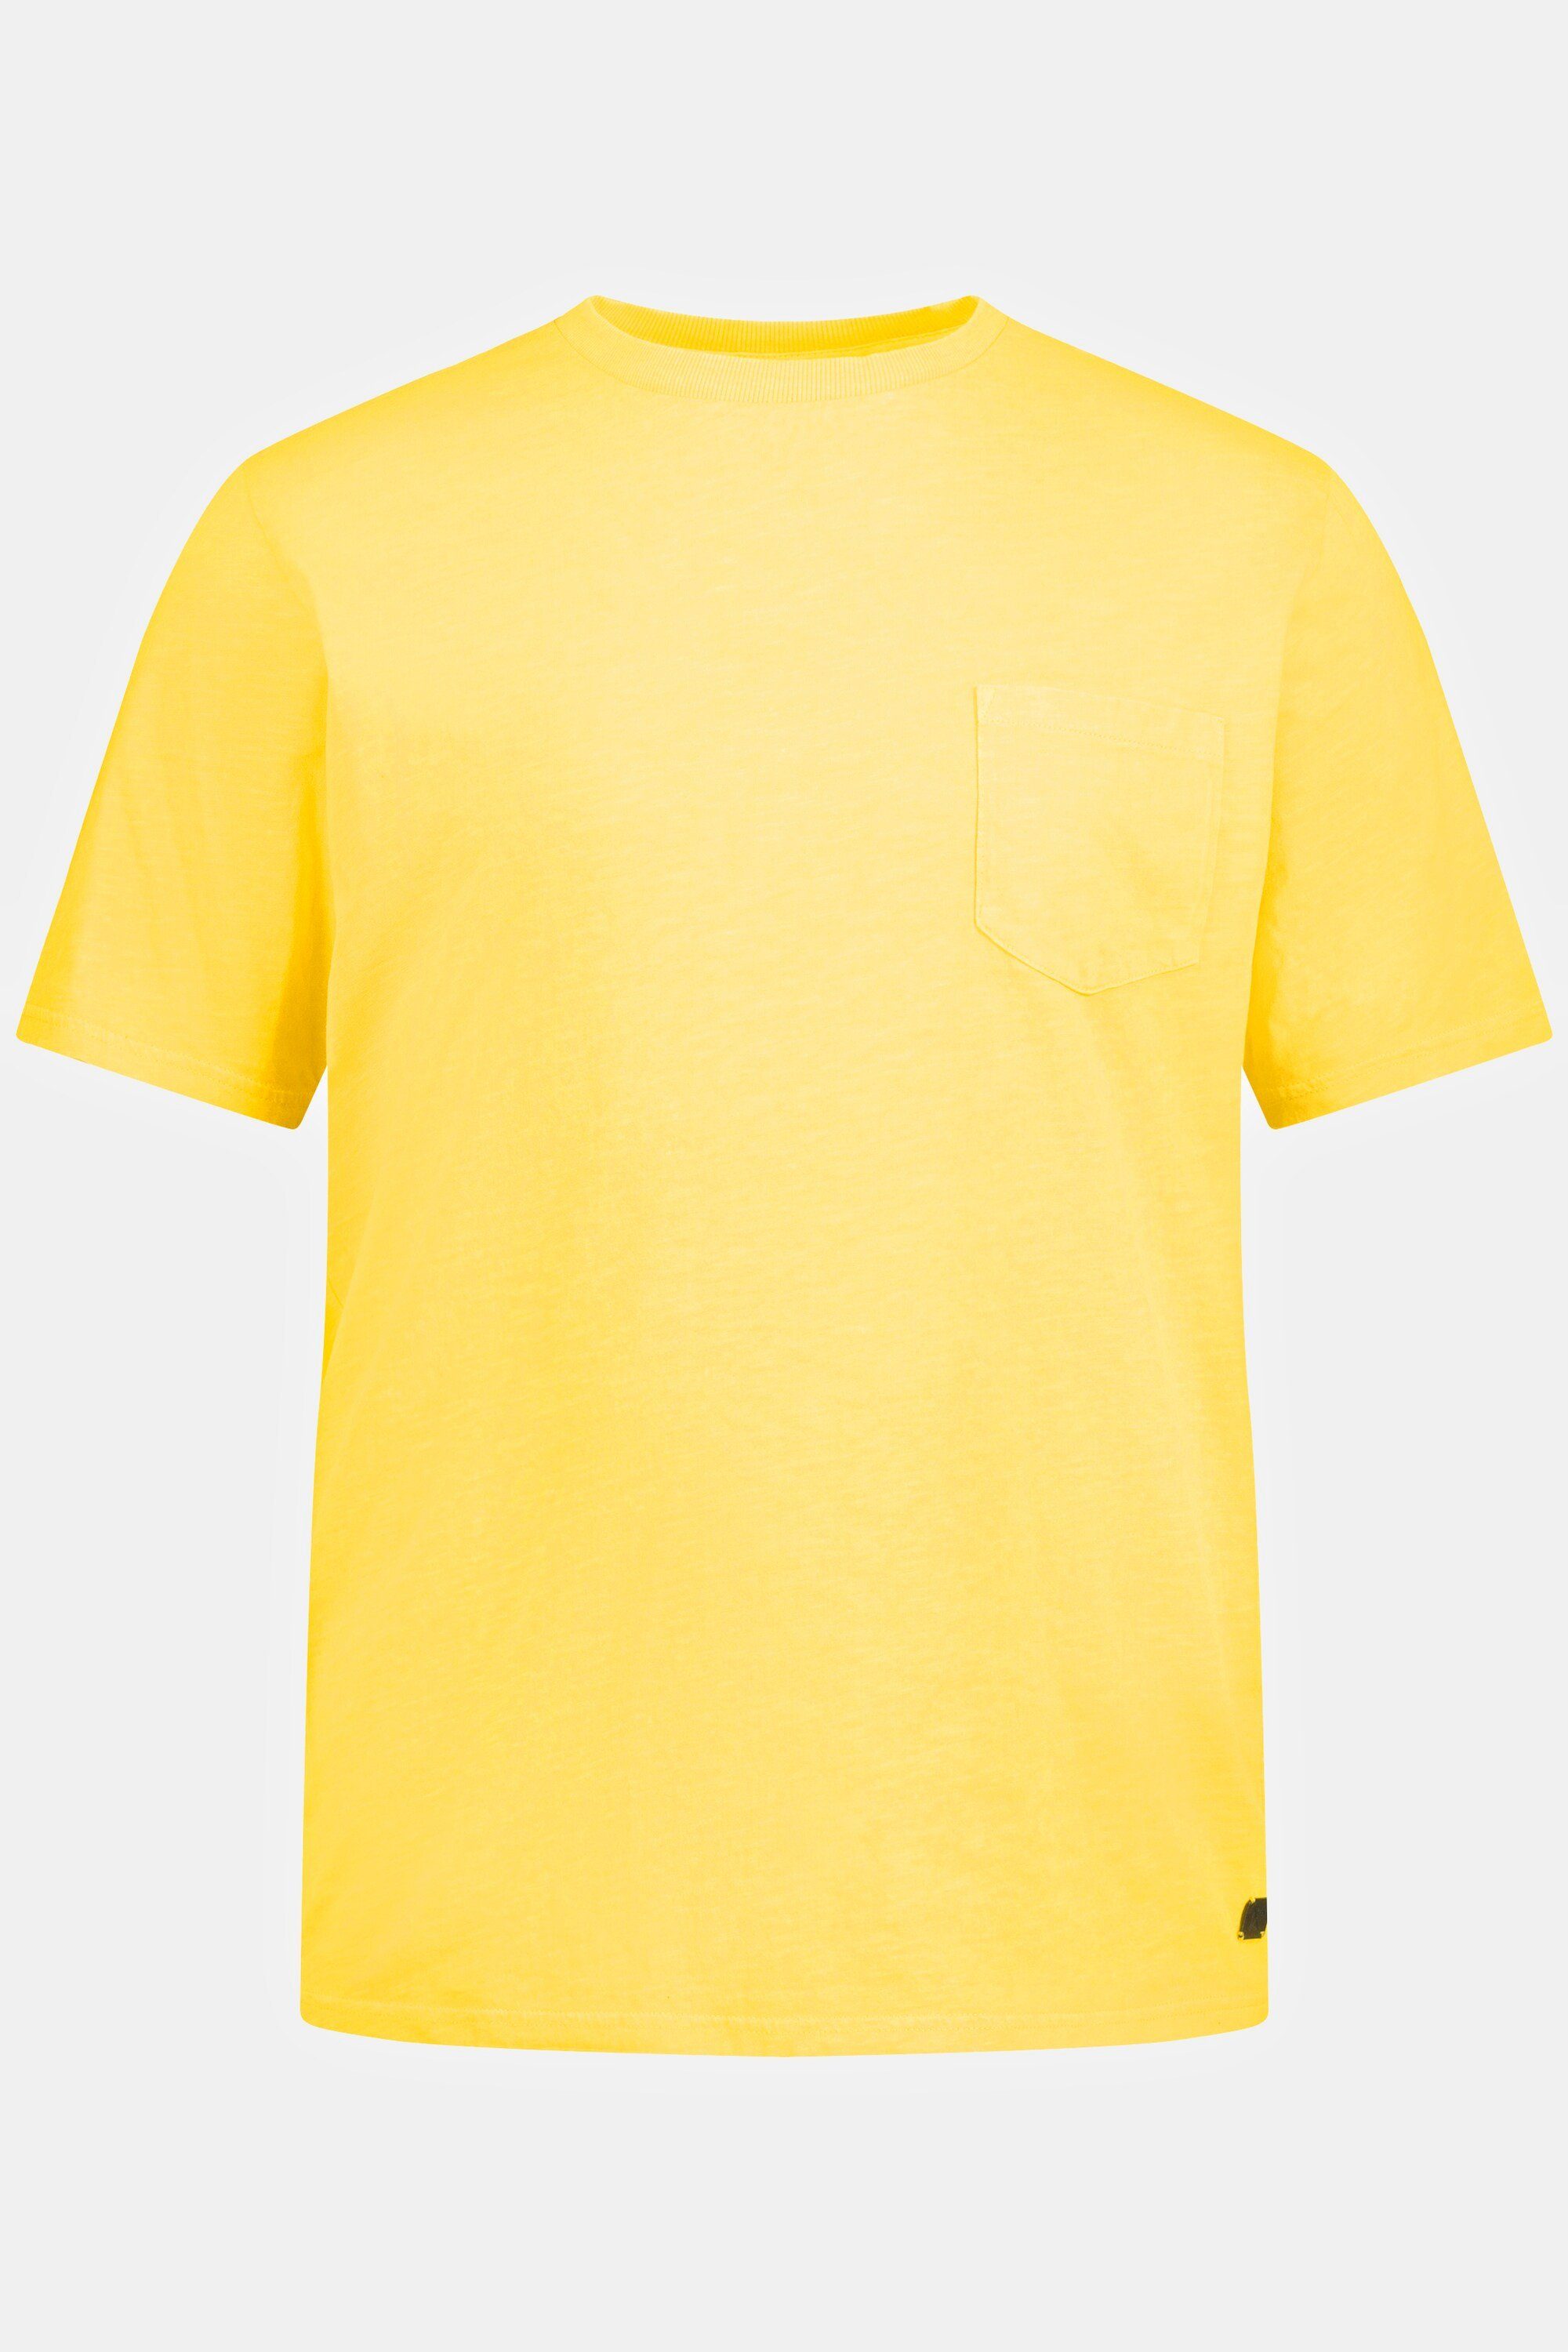 Brusttasche T-Shirt Halbarm T-Shirt JP1880 hellgelb Rundhals